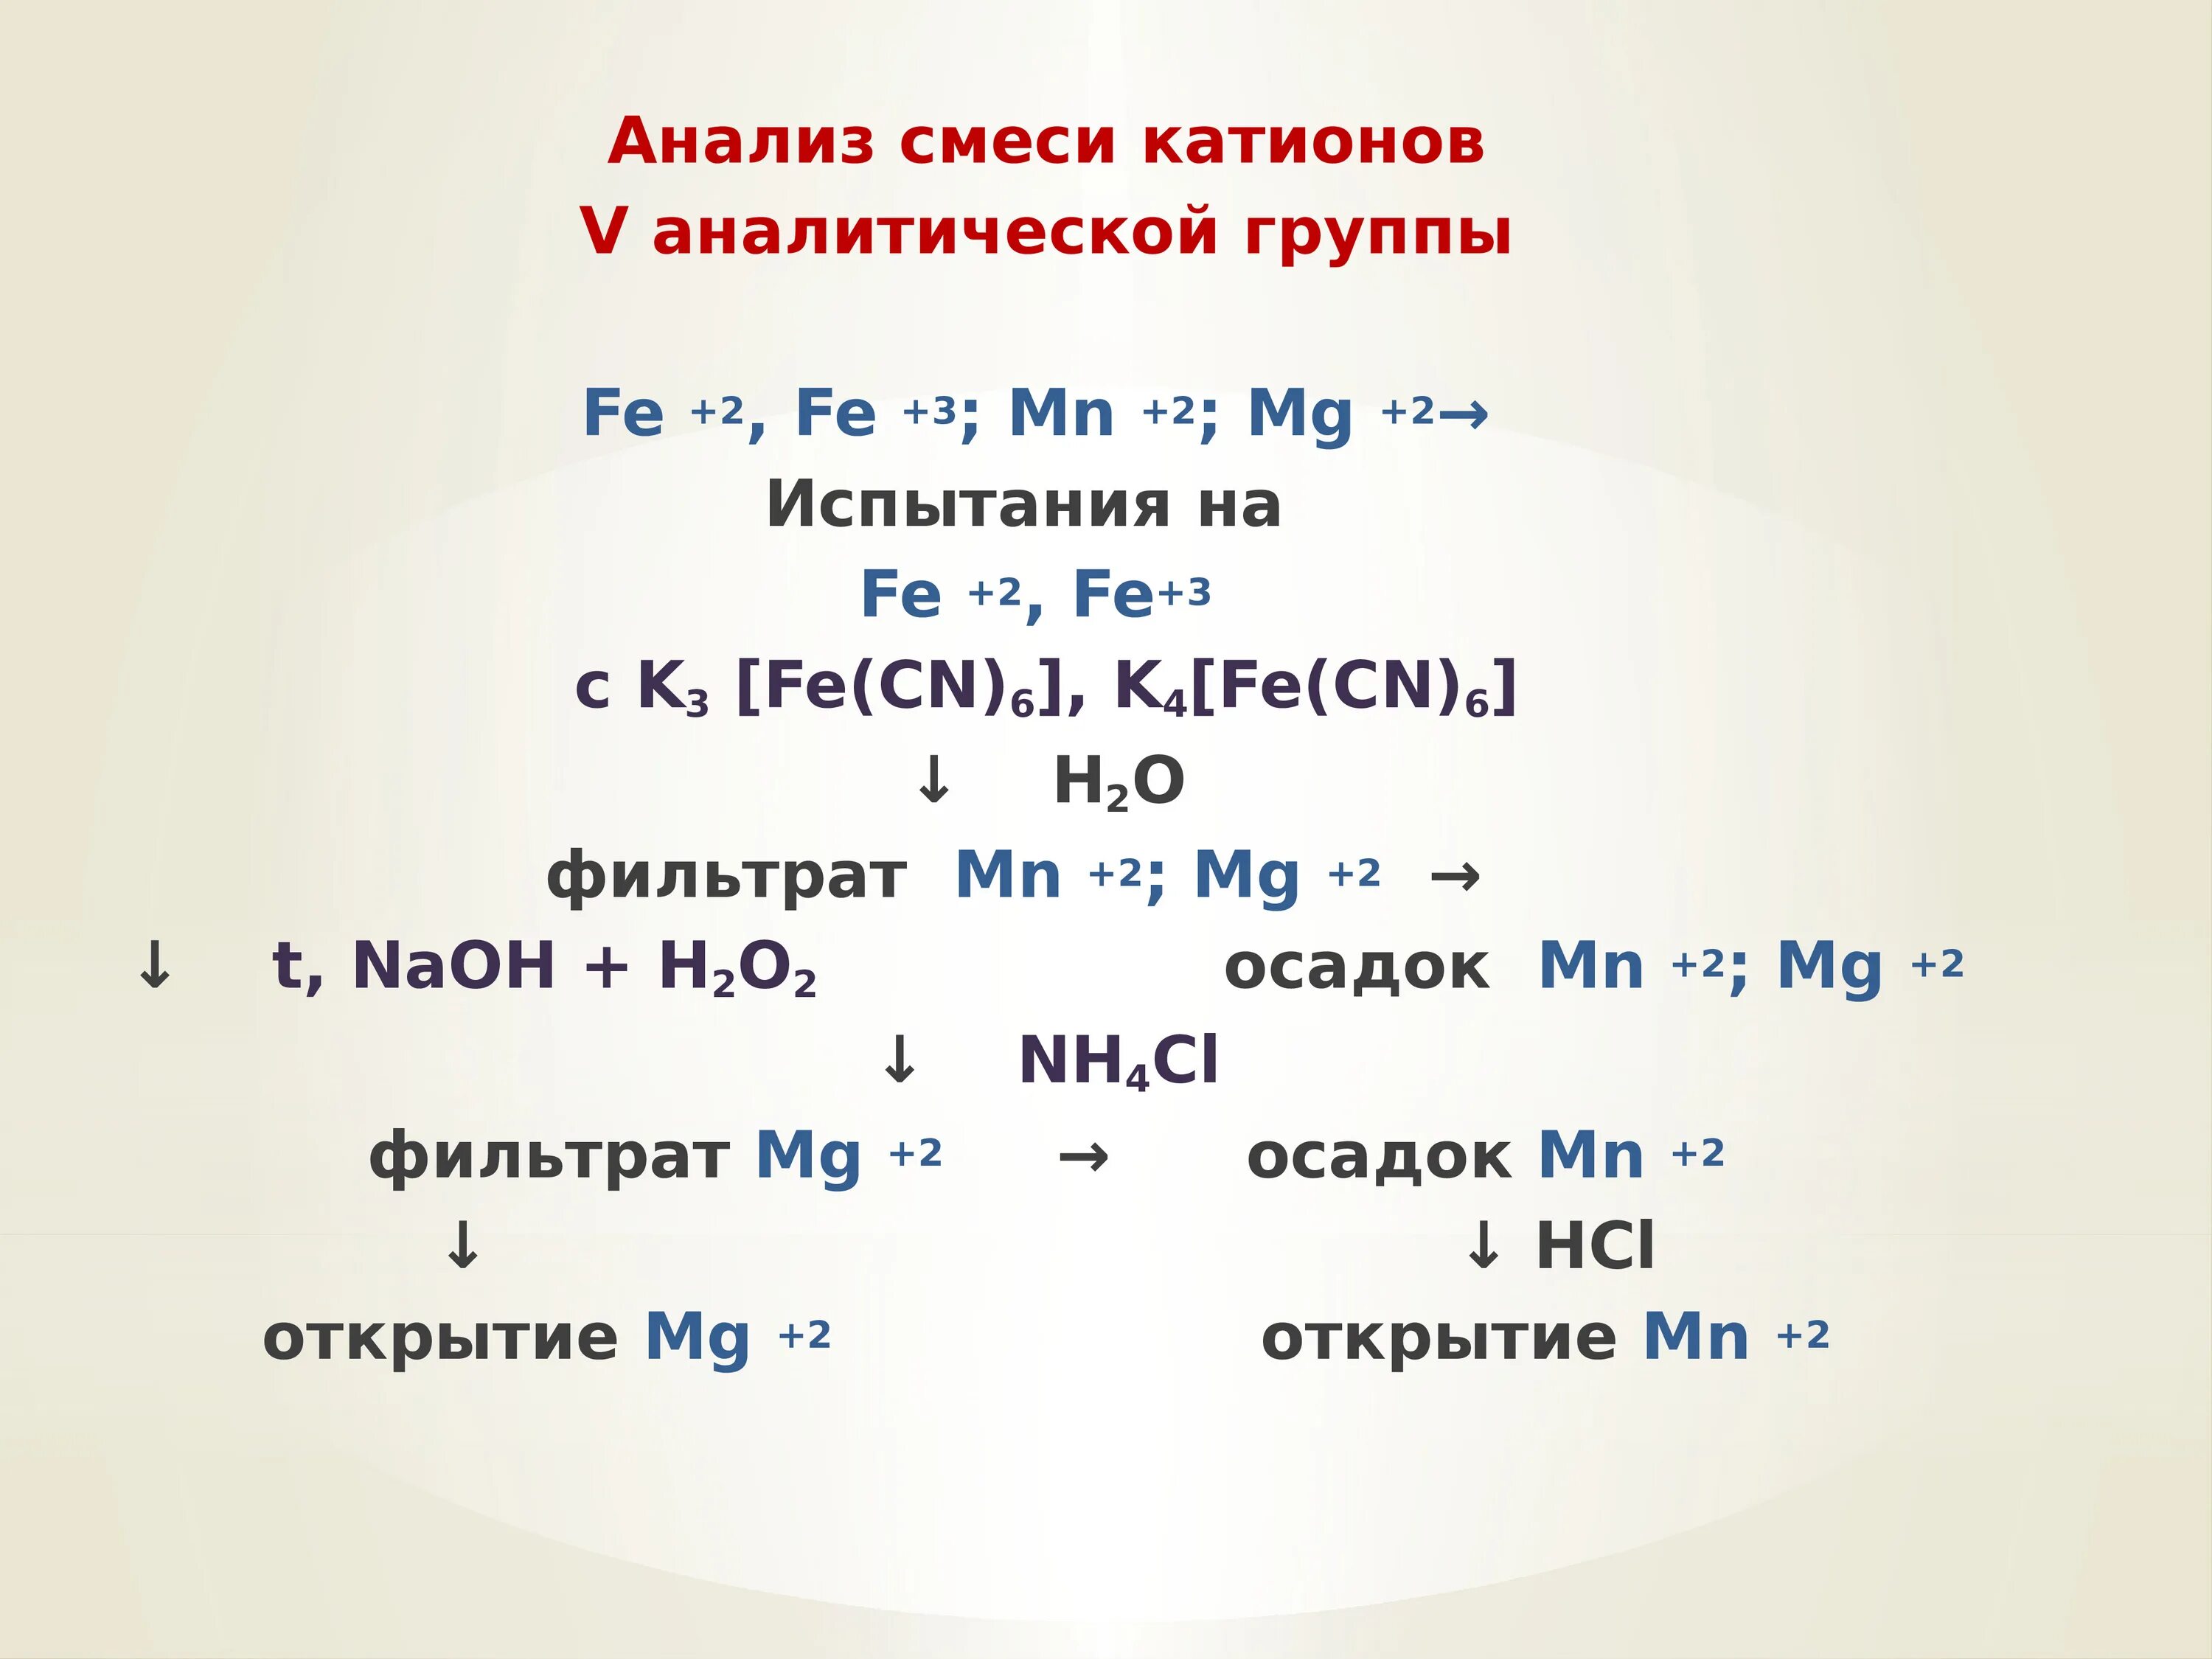 Анализ IV-vi групп катионов. Катионы 5 и 6 аналитической группы. 6 Группа катионов. Анализ смеси катионов 3 аналитической группы.